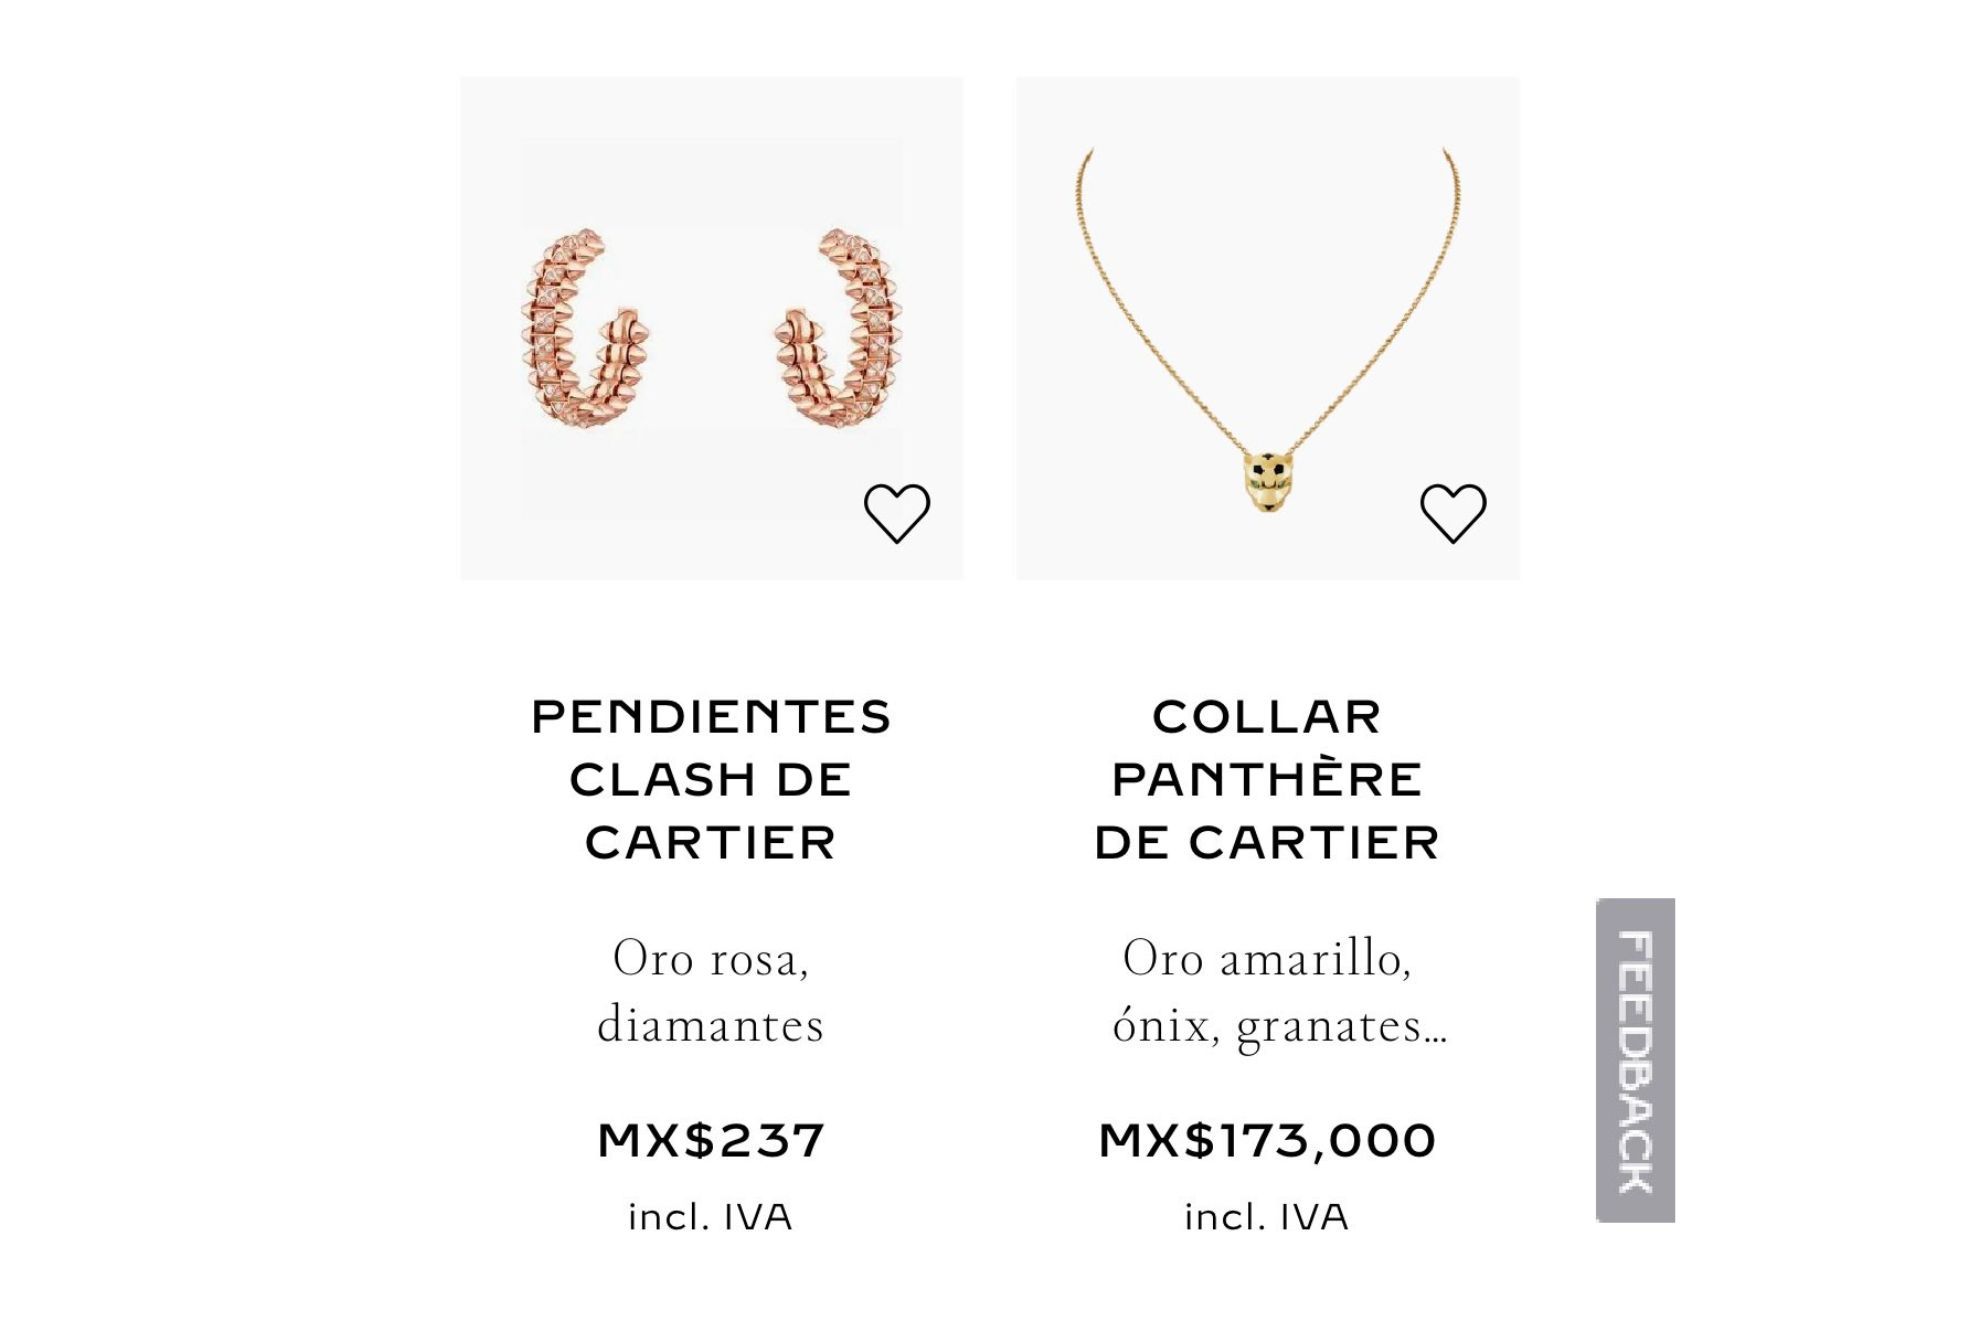 Un fallo de Cartier permite que un cliente compre dos pares de pendientes de diamantes por slo 13 euros